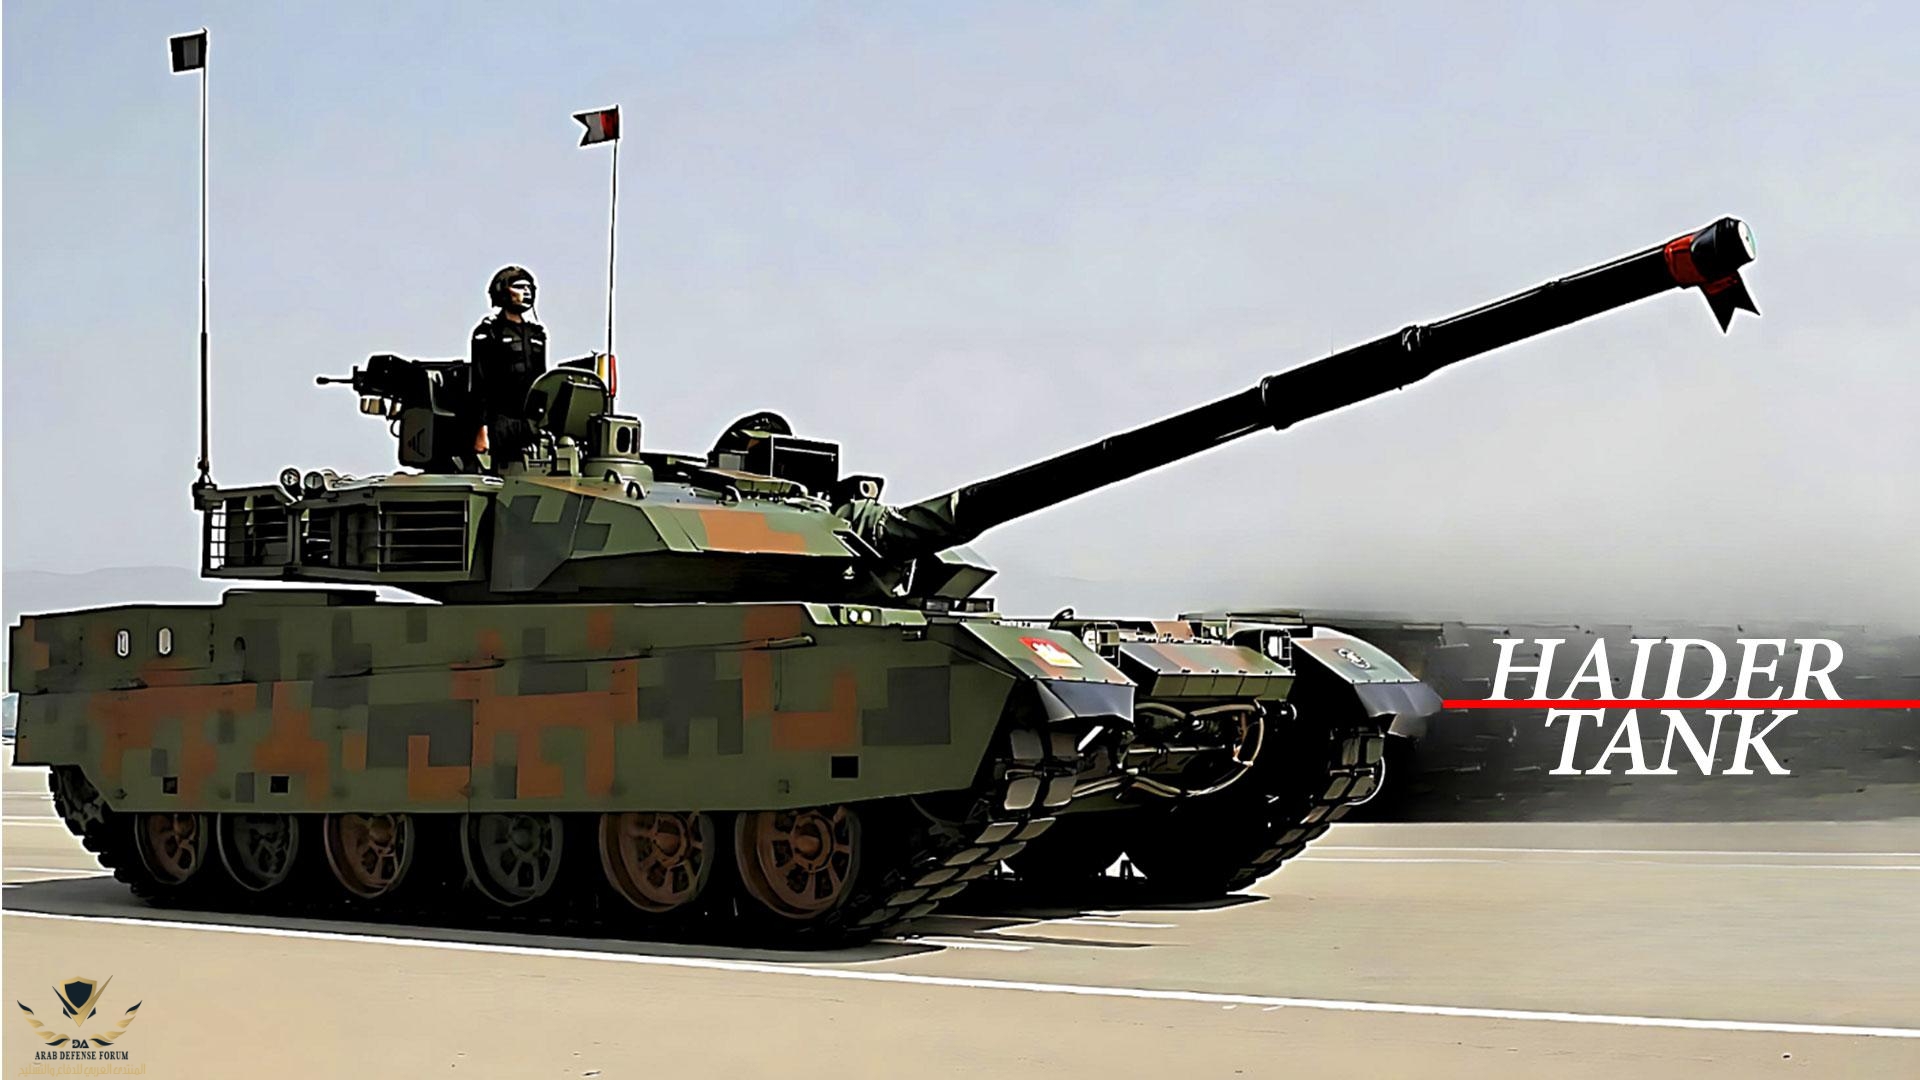 Pakistans-Haider-Main-Battle-Tank (1).jpg